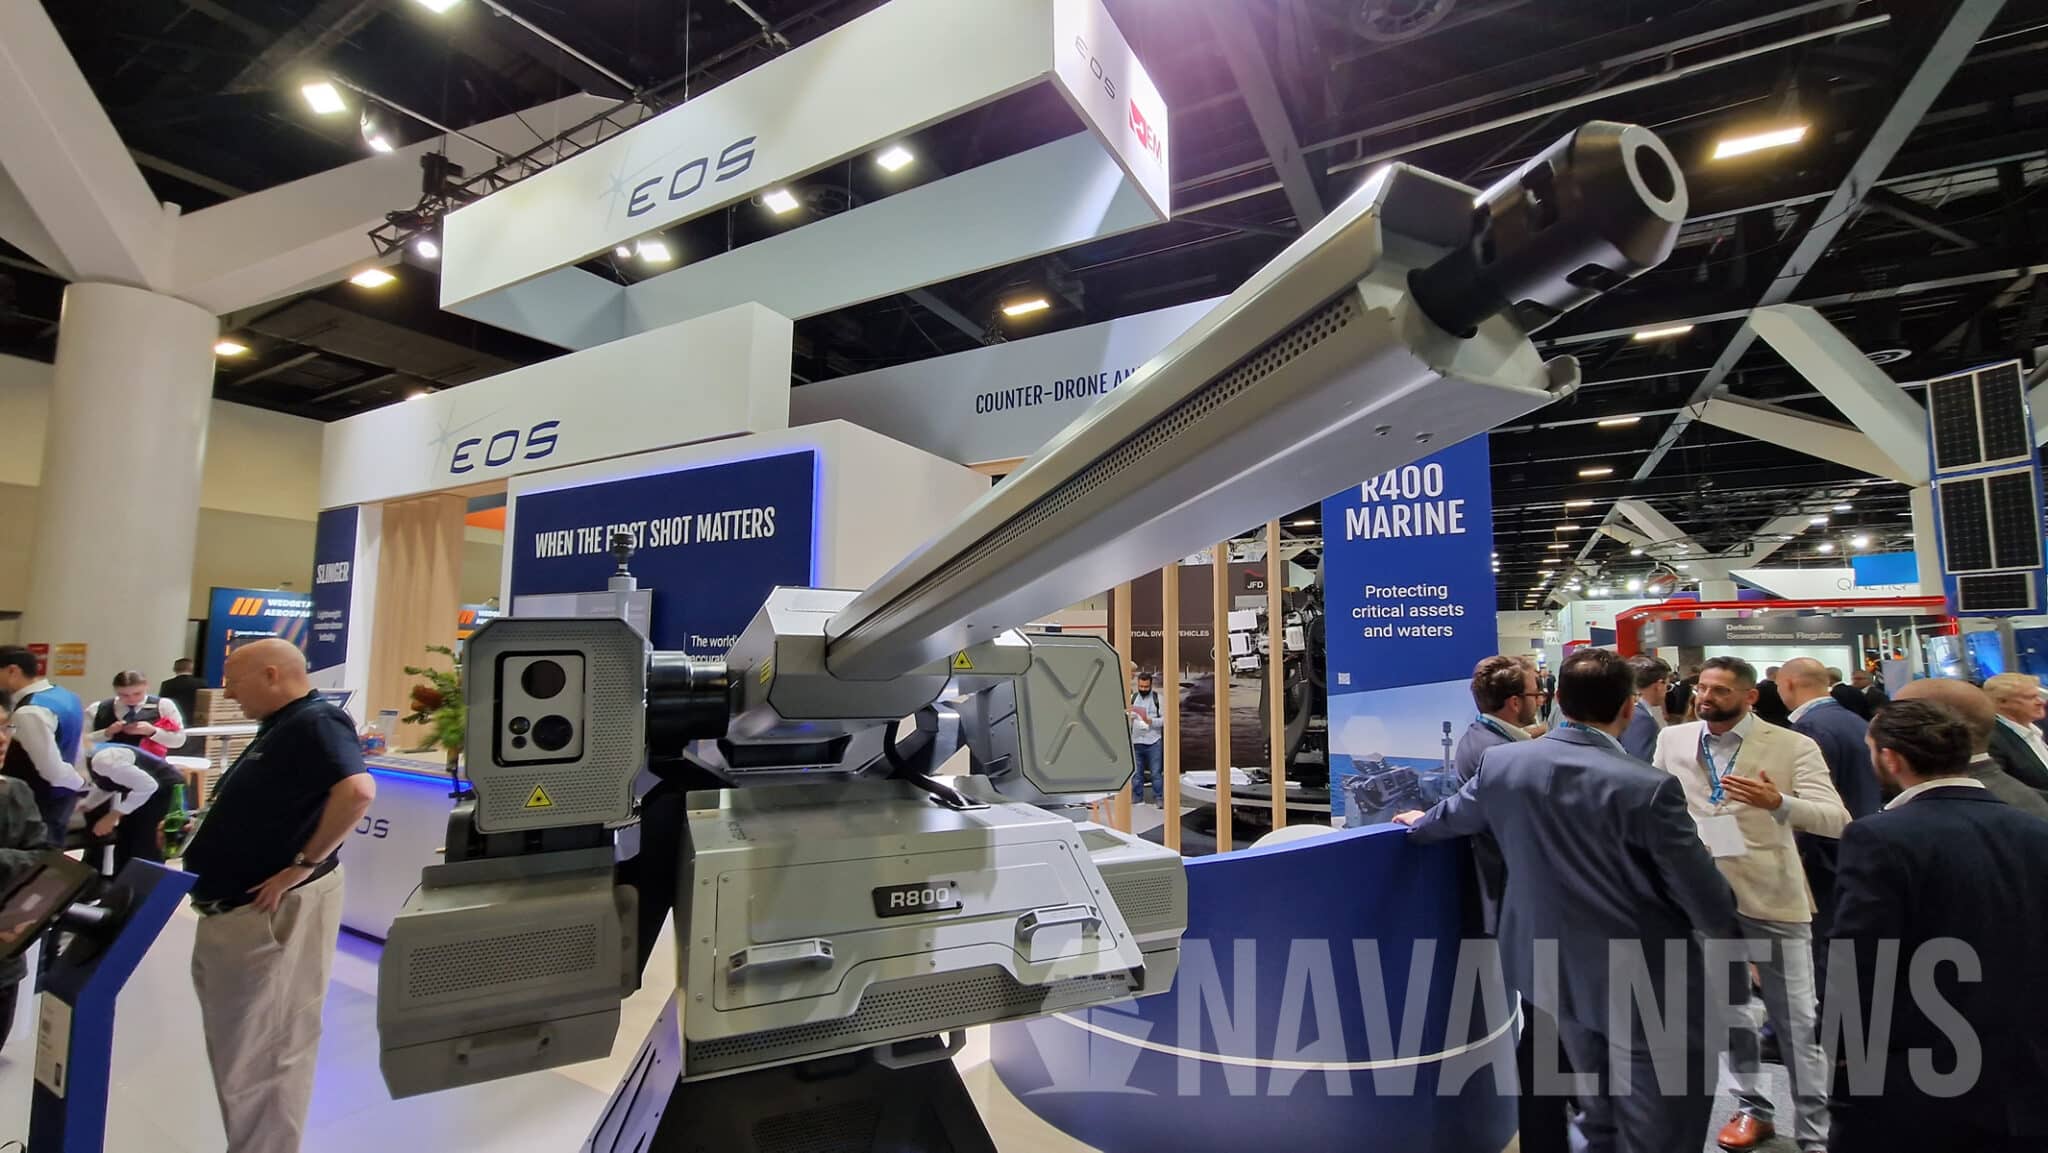 Dazzler - gevechtsmodule met 500W laserwapen, automatisch kanon en machinegeweer om drones tegen te gaan